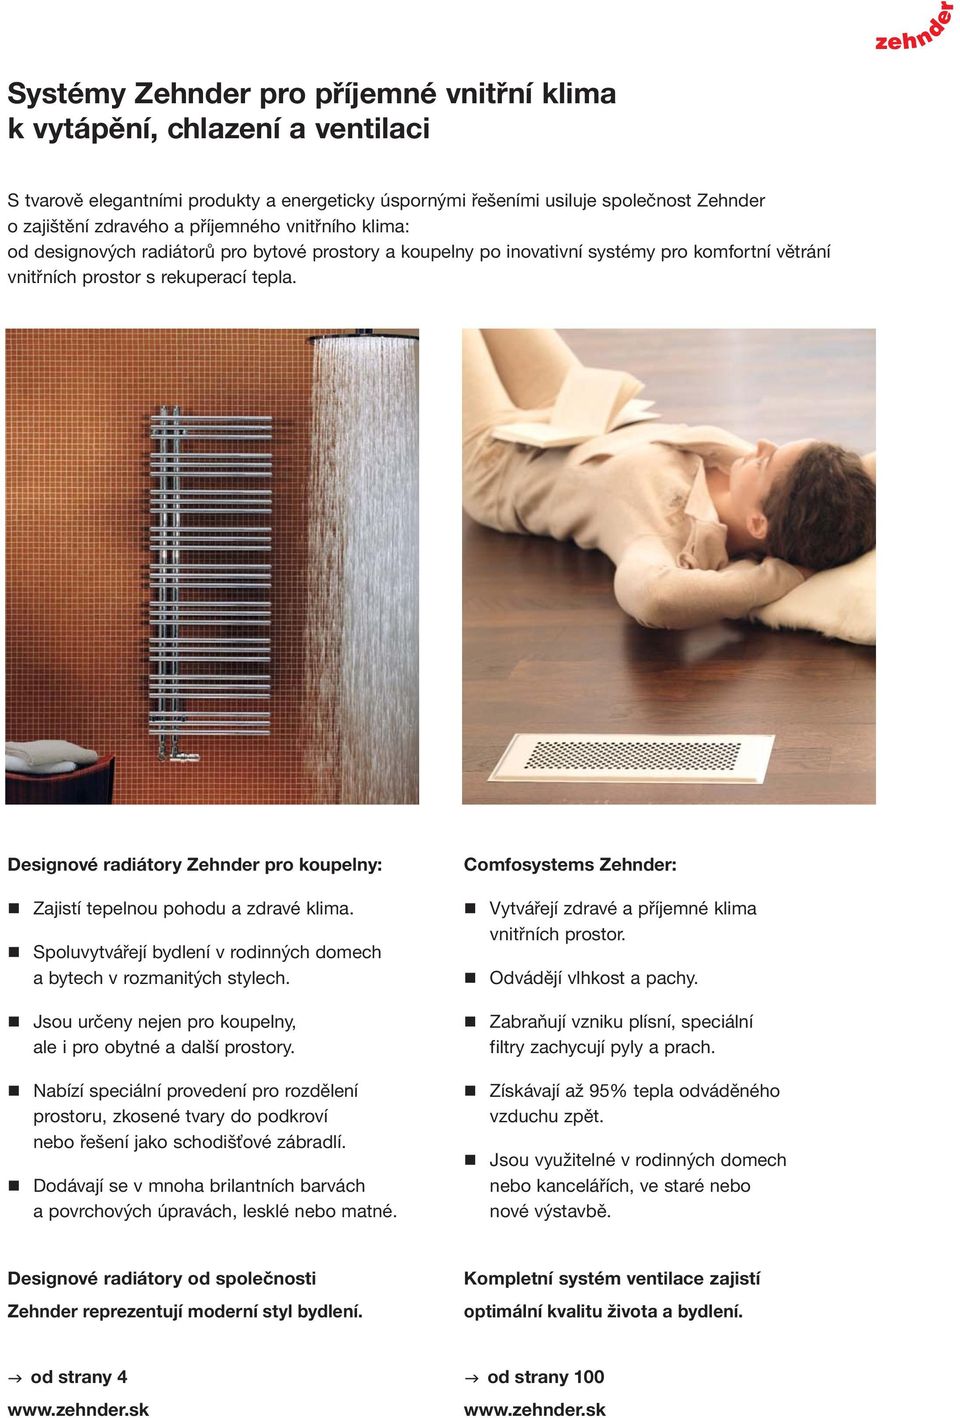 Designové radiátory Zehnder pro koupelny: Zajistí tepelnou pohodu a zdravé klima. Spoluvytvářejí bydlení v rodinných domech a bytech v rozmanitých stylech.